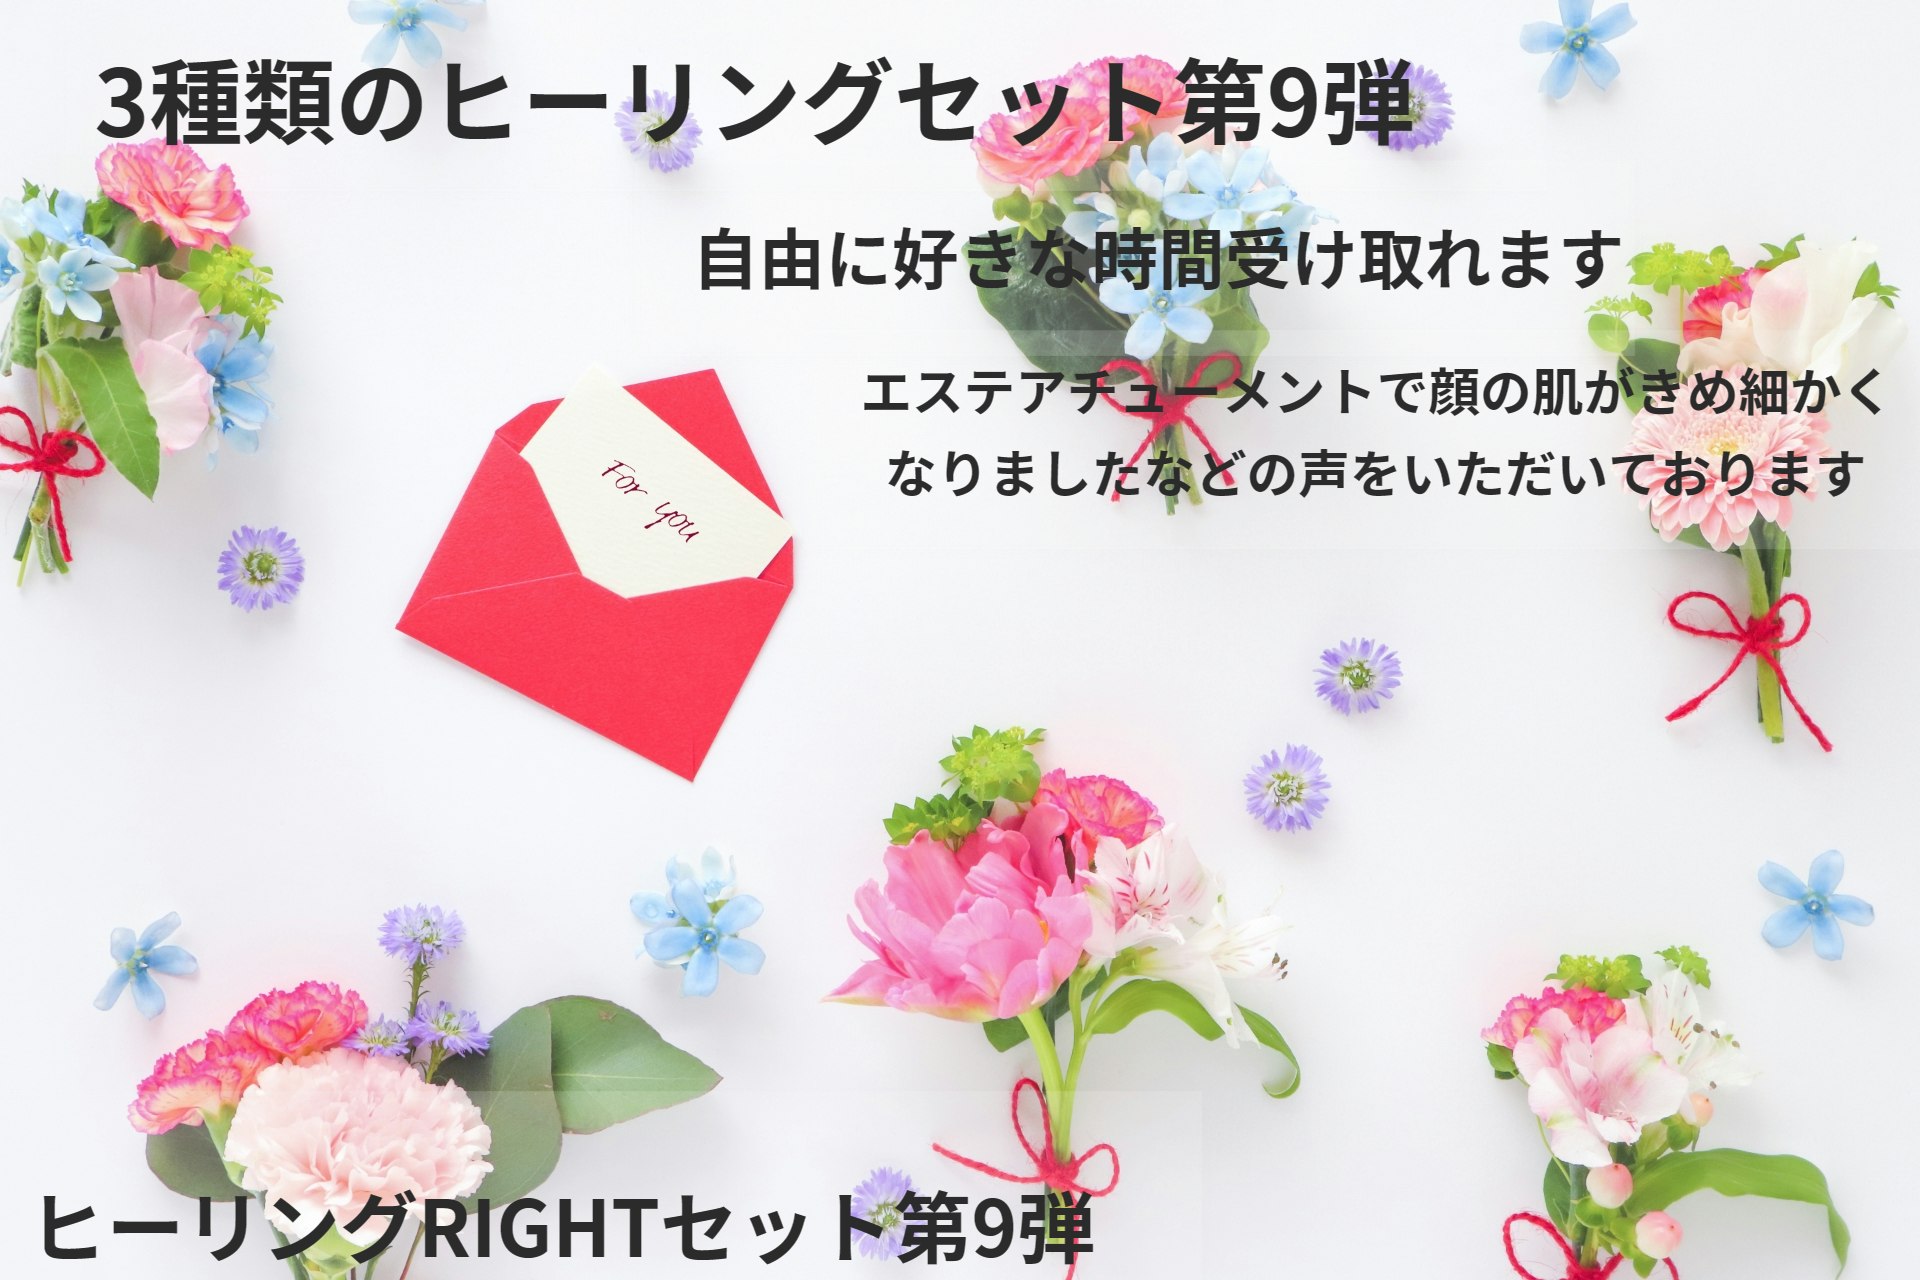 【100円】3種類のヒーリング、アチューメントセット第9弾発売１００円キャンペーンを4月2日から4月9日までします